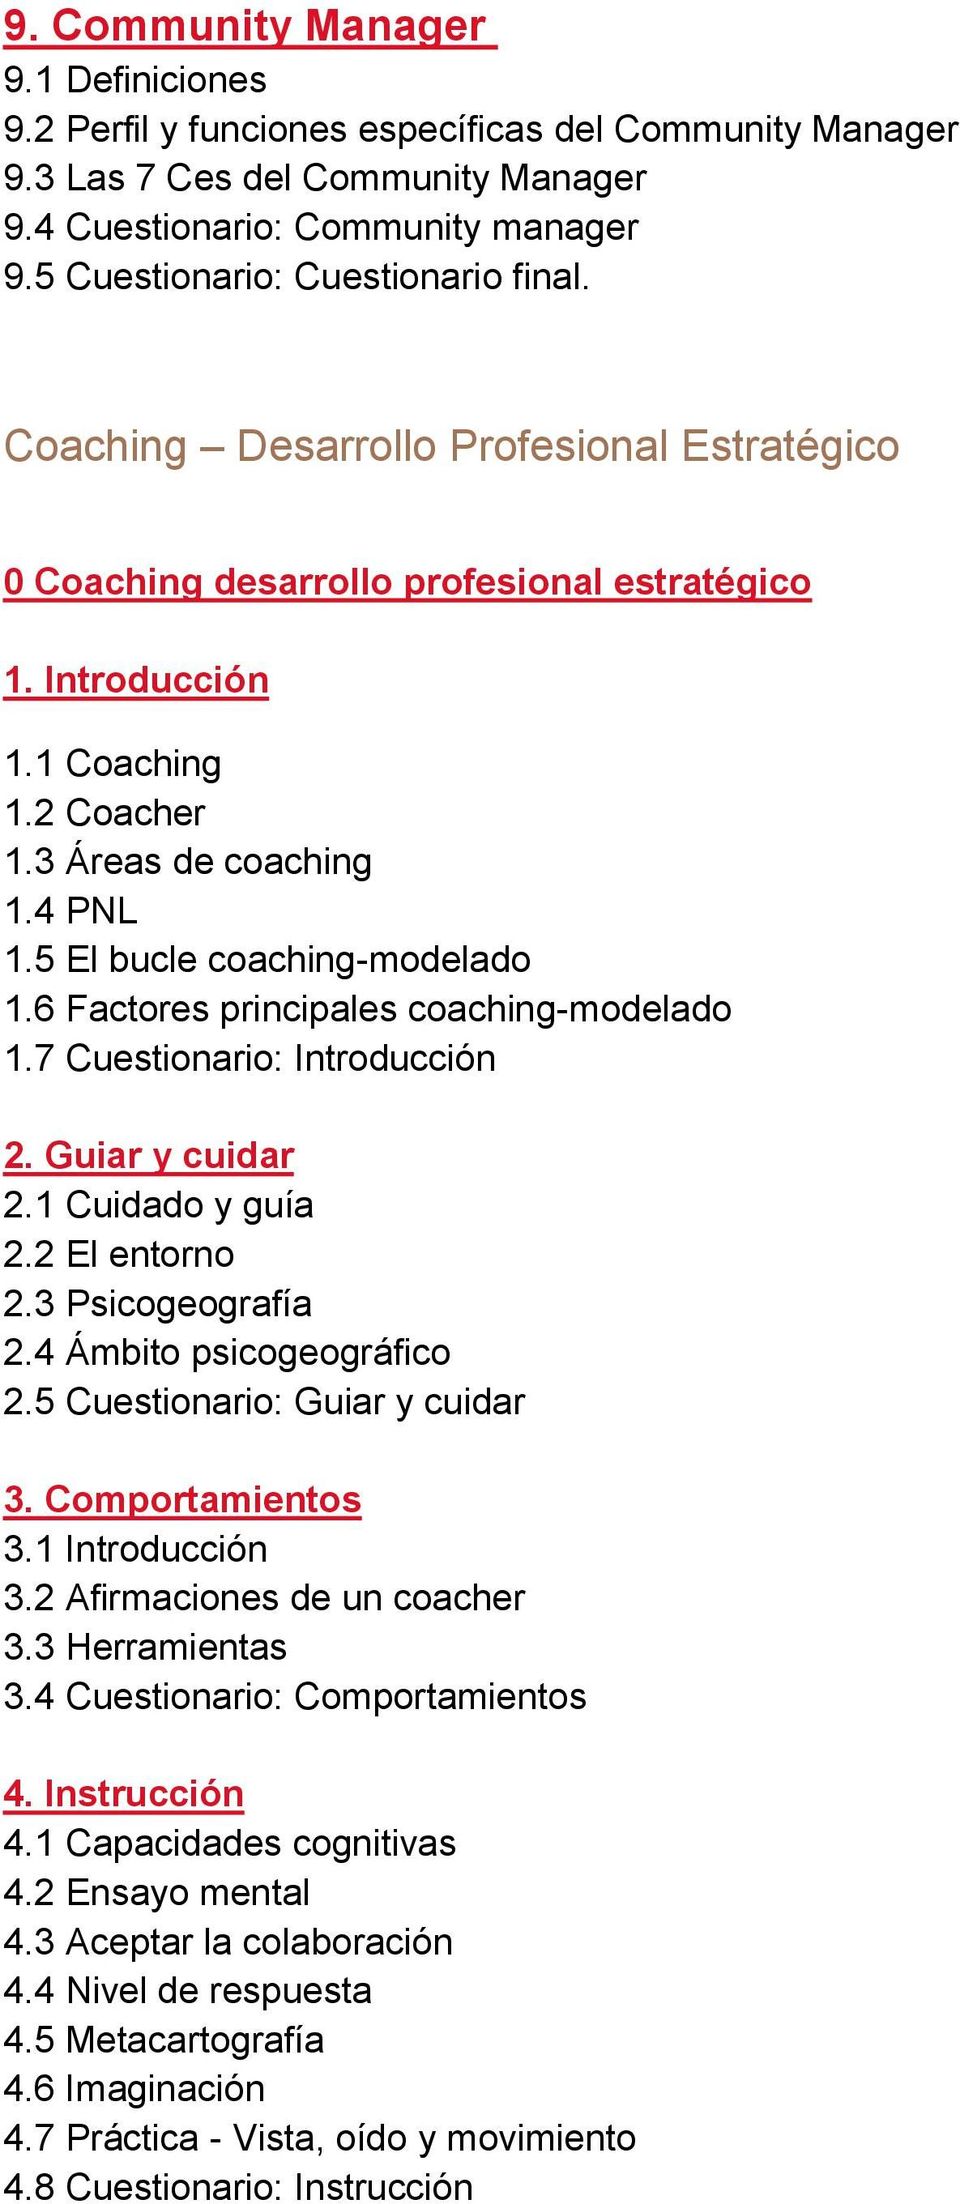 5 El bucle coaching-modelado 1.6 Factores principales coaching-modelado 1.7 Cuestionario: Introducción 2. Guiar y cuidar 2.1 Cuidado y guía 2.2 El entorno 2.3 Psicogeografía 2.